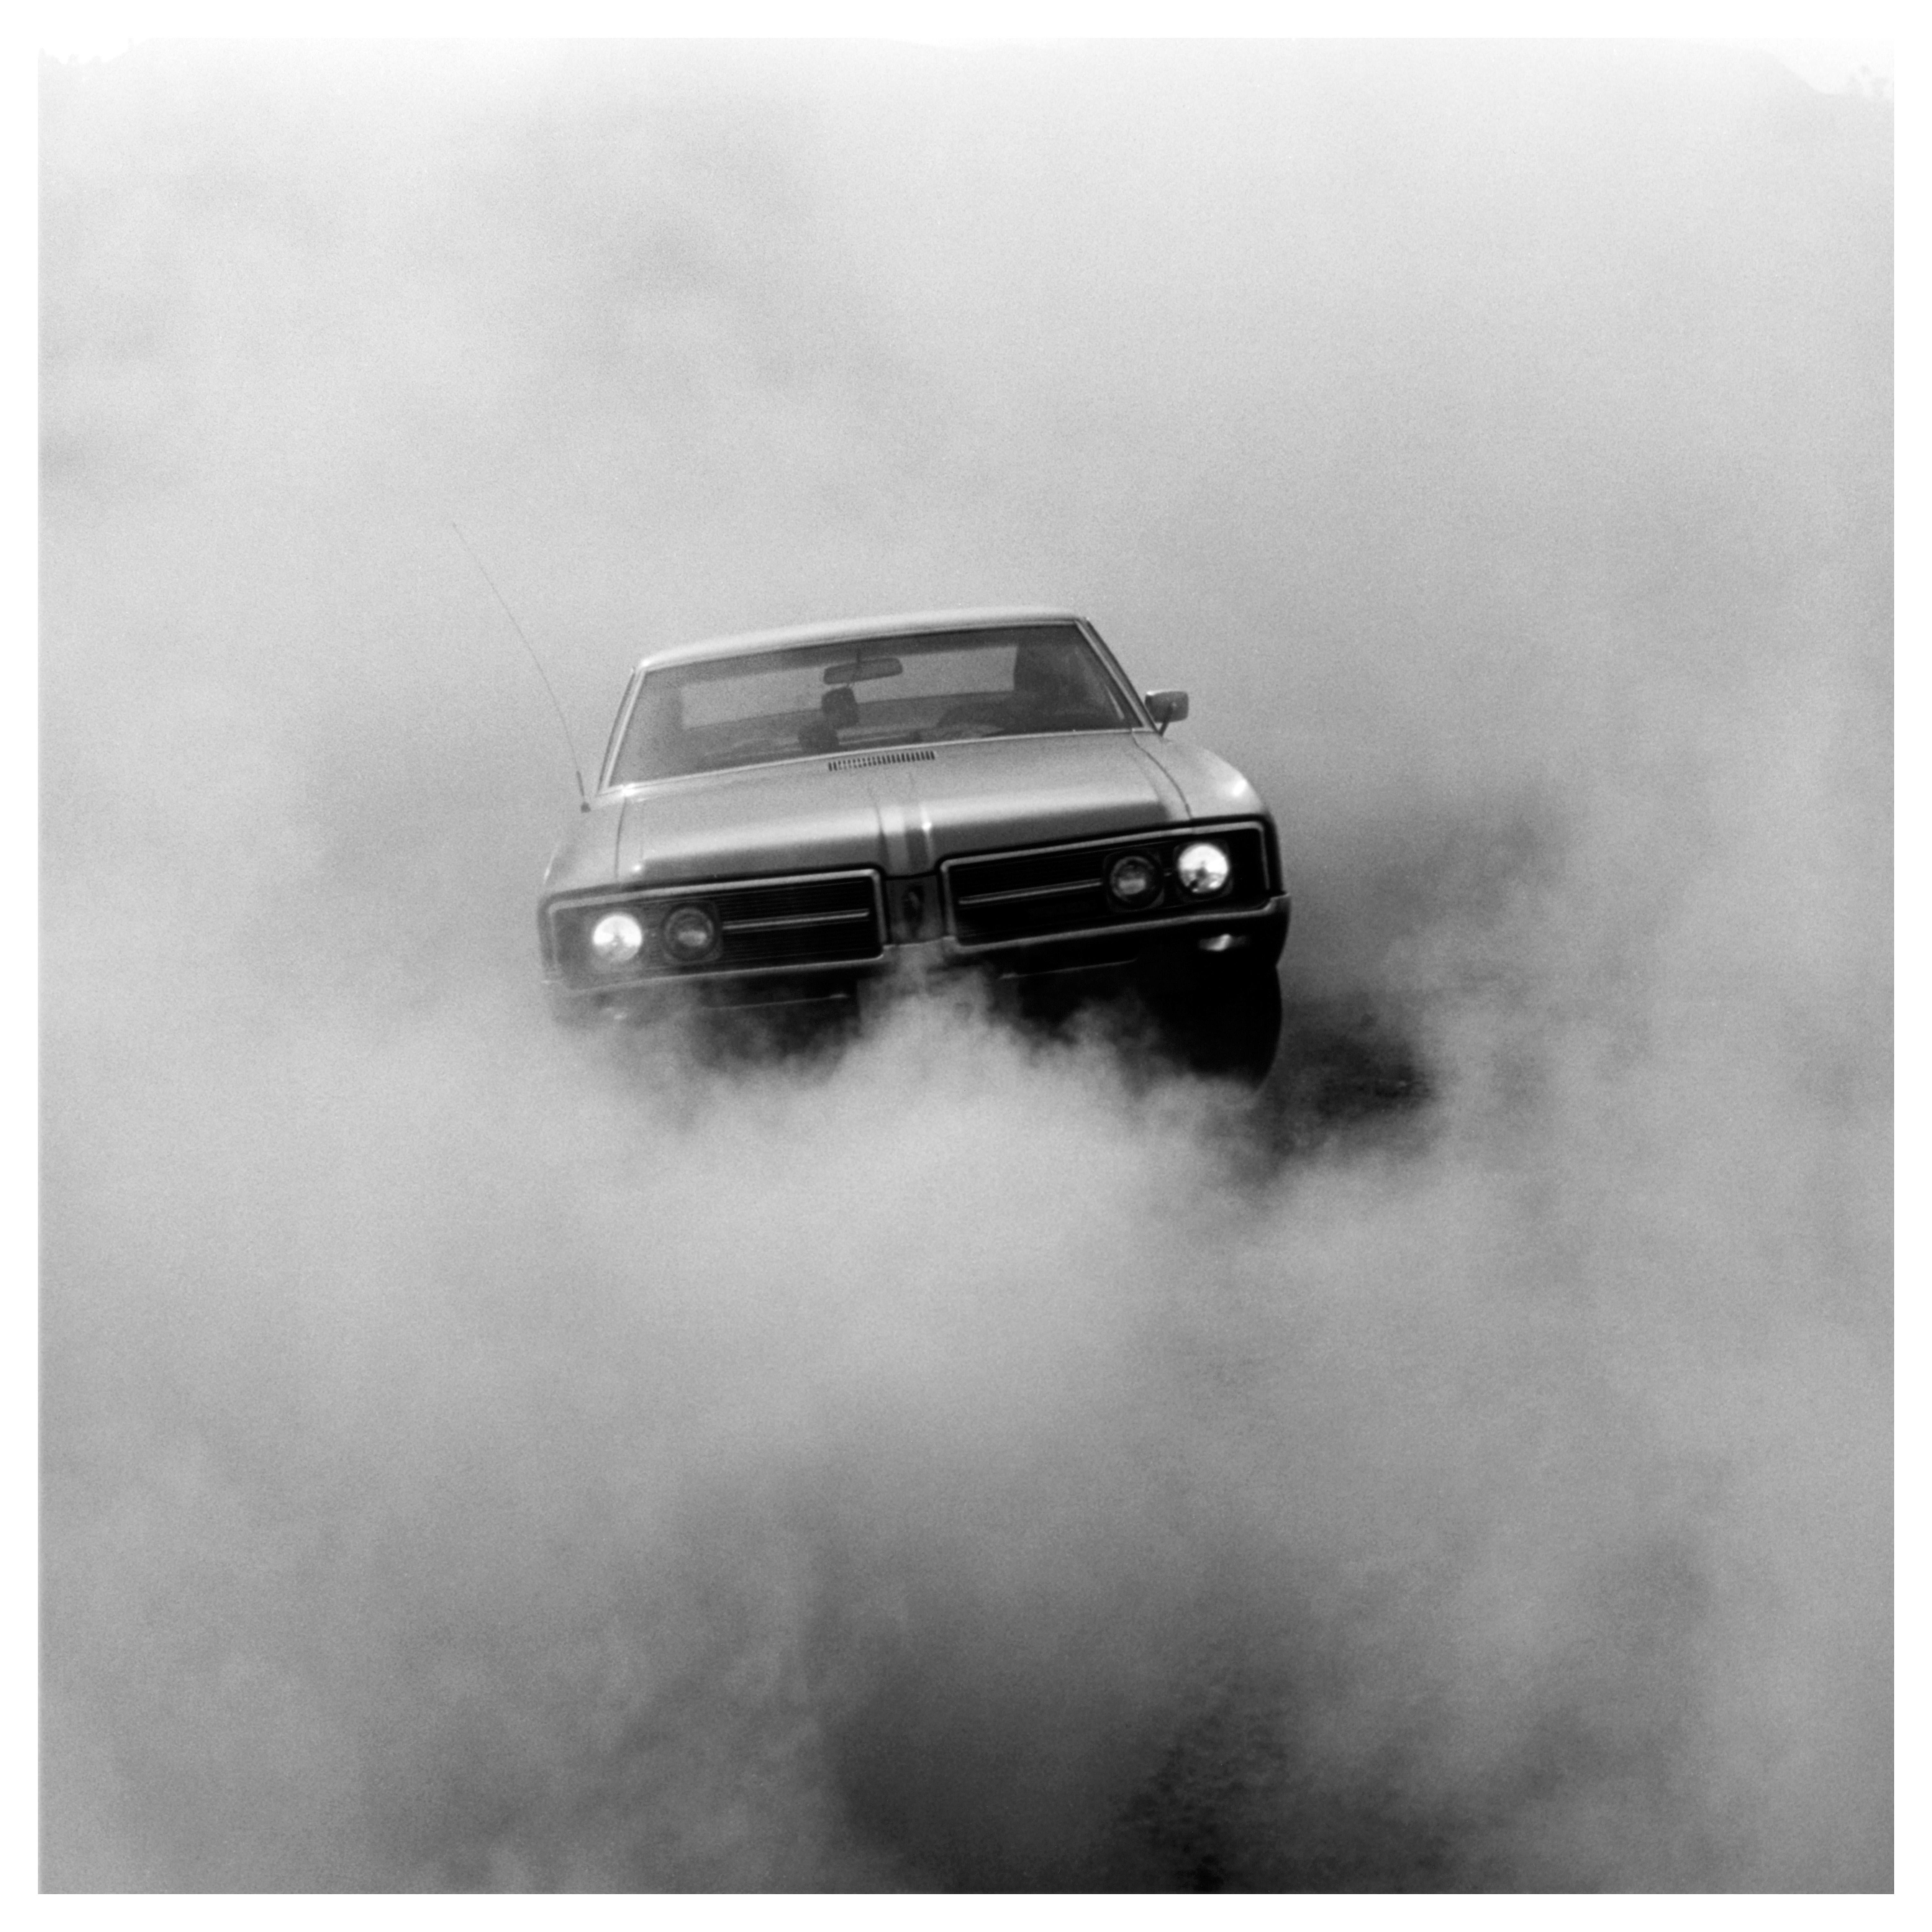 Buick in the Dust, Hemsby - Photographie de voiture carrée en noir et blanc